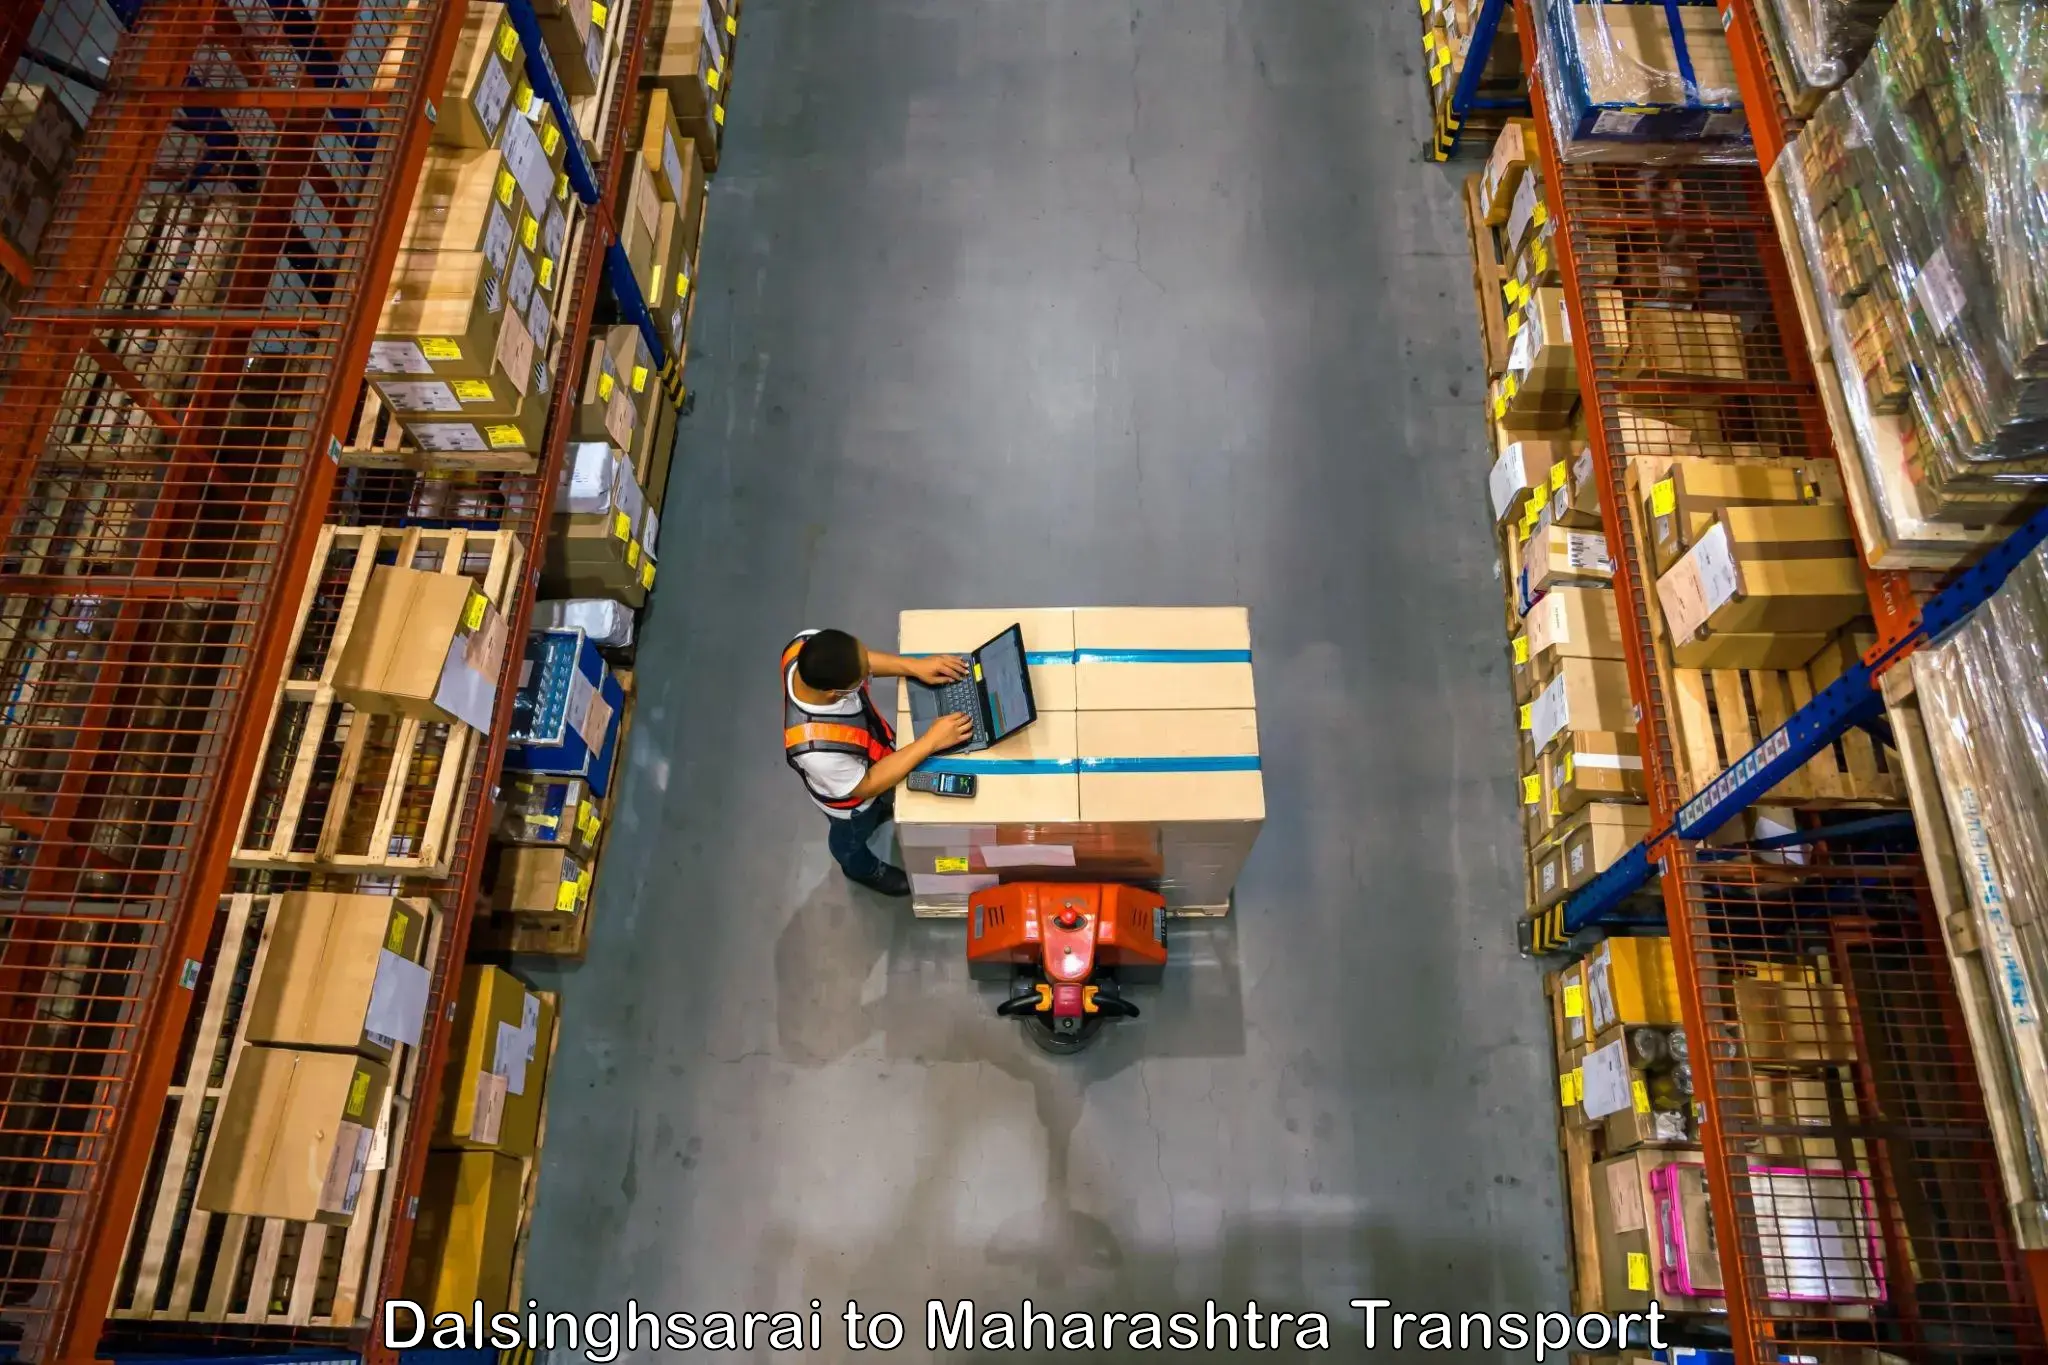 Furniture transport service in Dalsinghsarai to Gondpipri